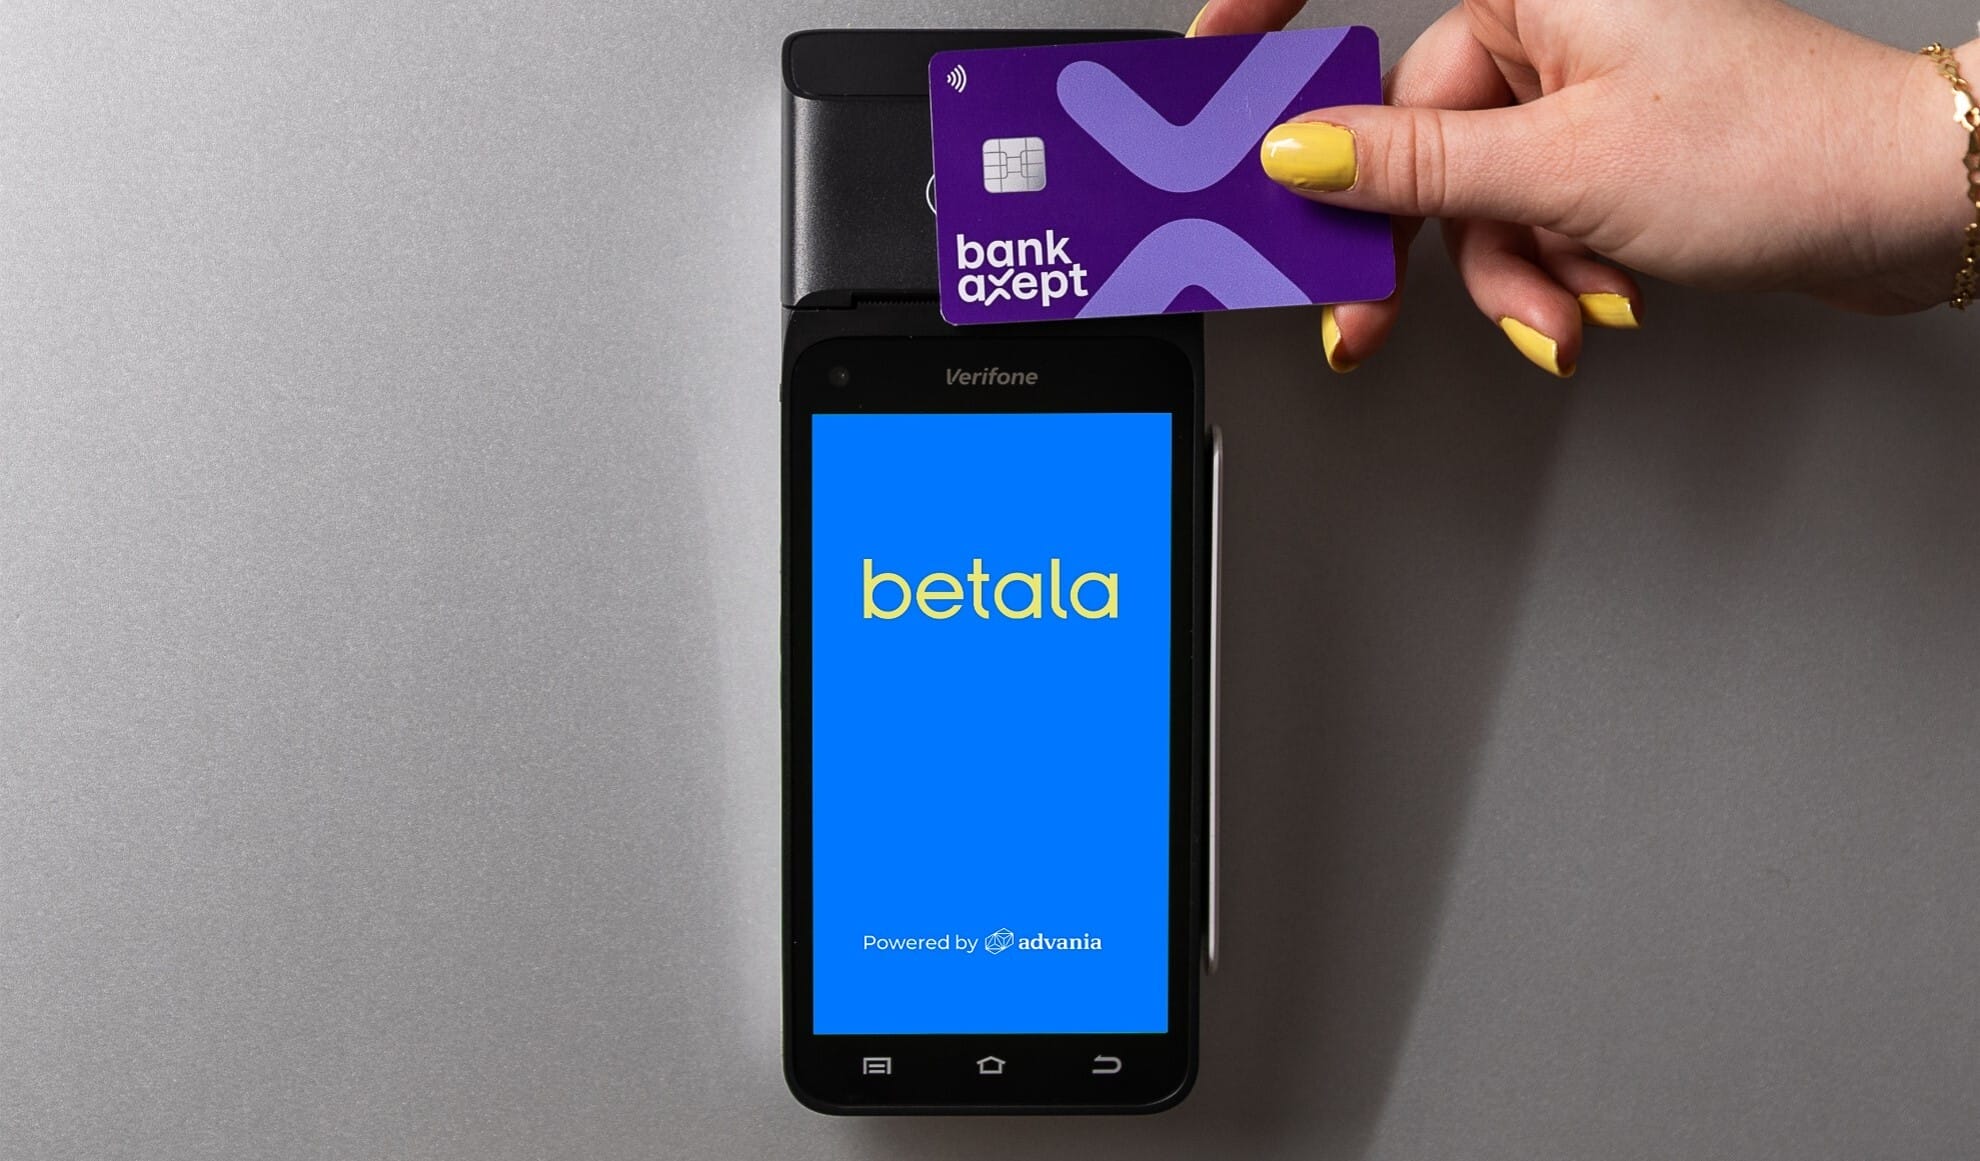 Bildet viser en betalingsterminal. På skjermen er Betala sin logo avbildet. Det er en hånd som "tæpper" et BankAxept betalingskort over betalingsterminalen.